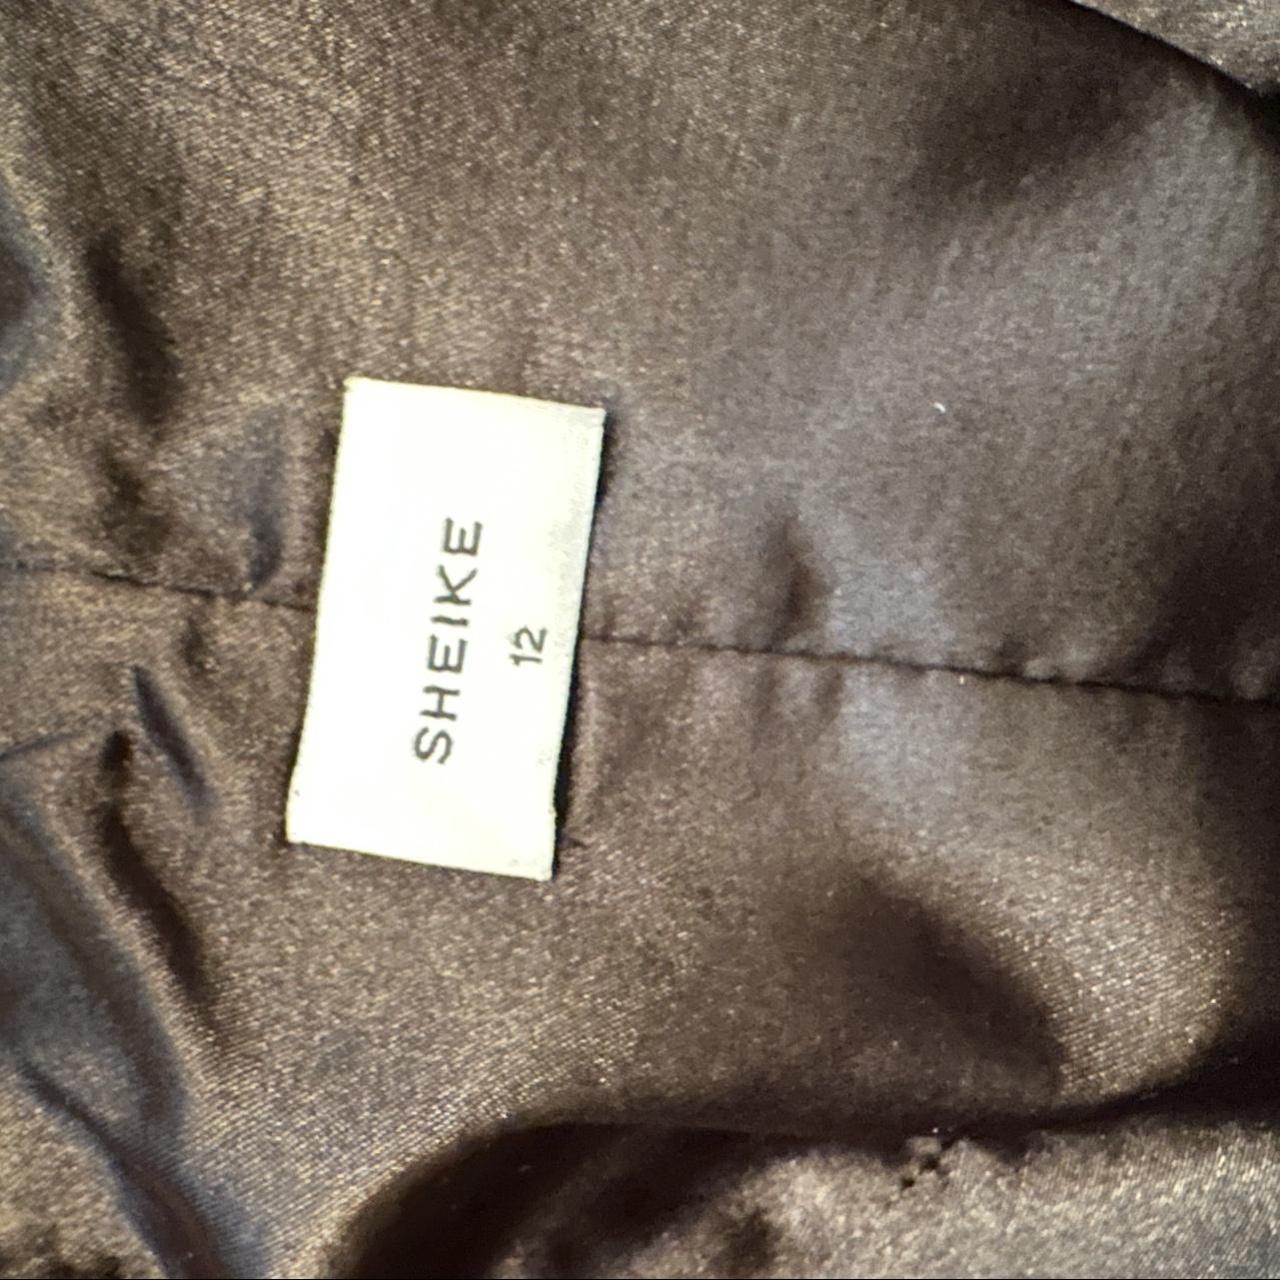 Sheike black one shoulder dress Size - 12 Aus... - Depop